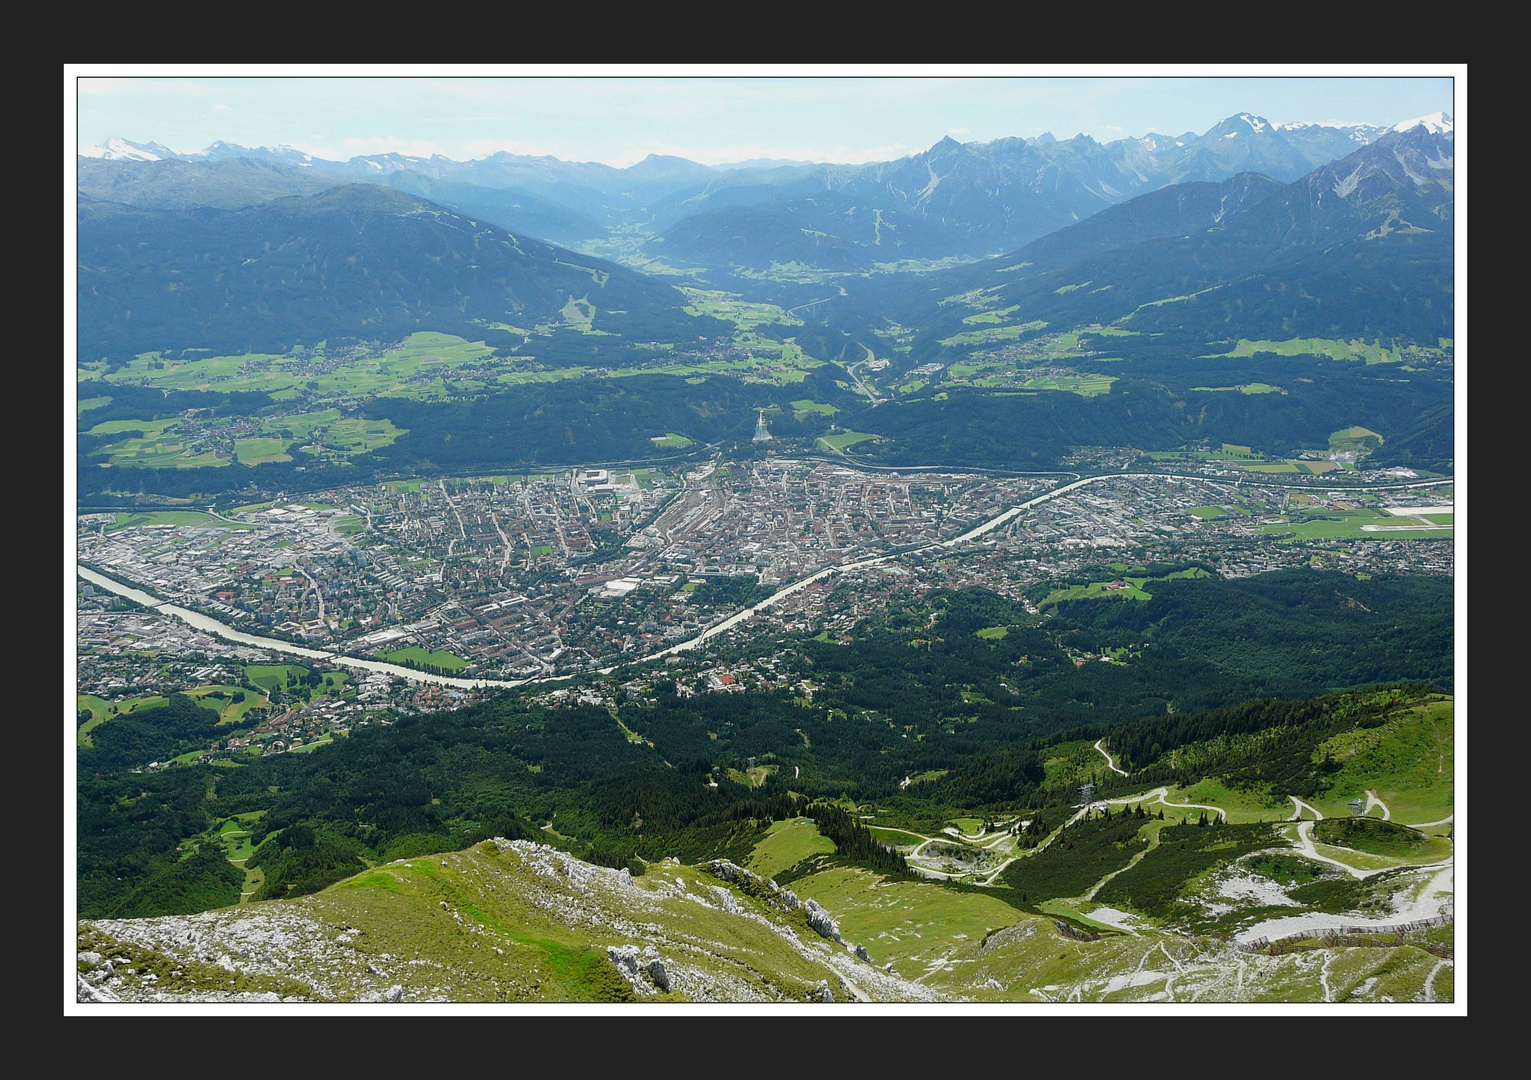 Innsbruck von oben